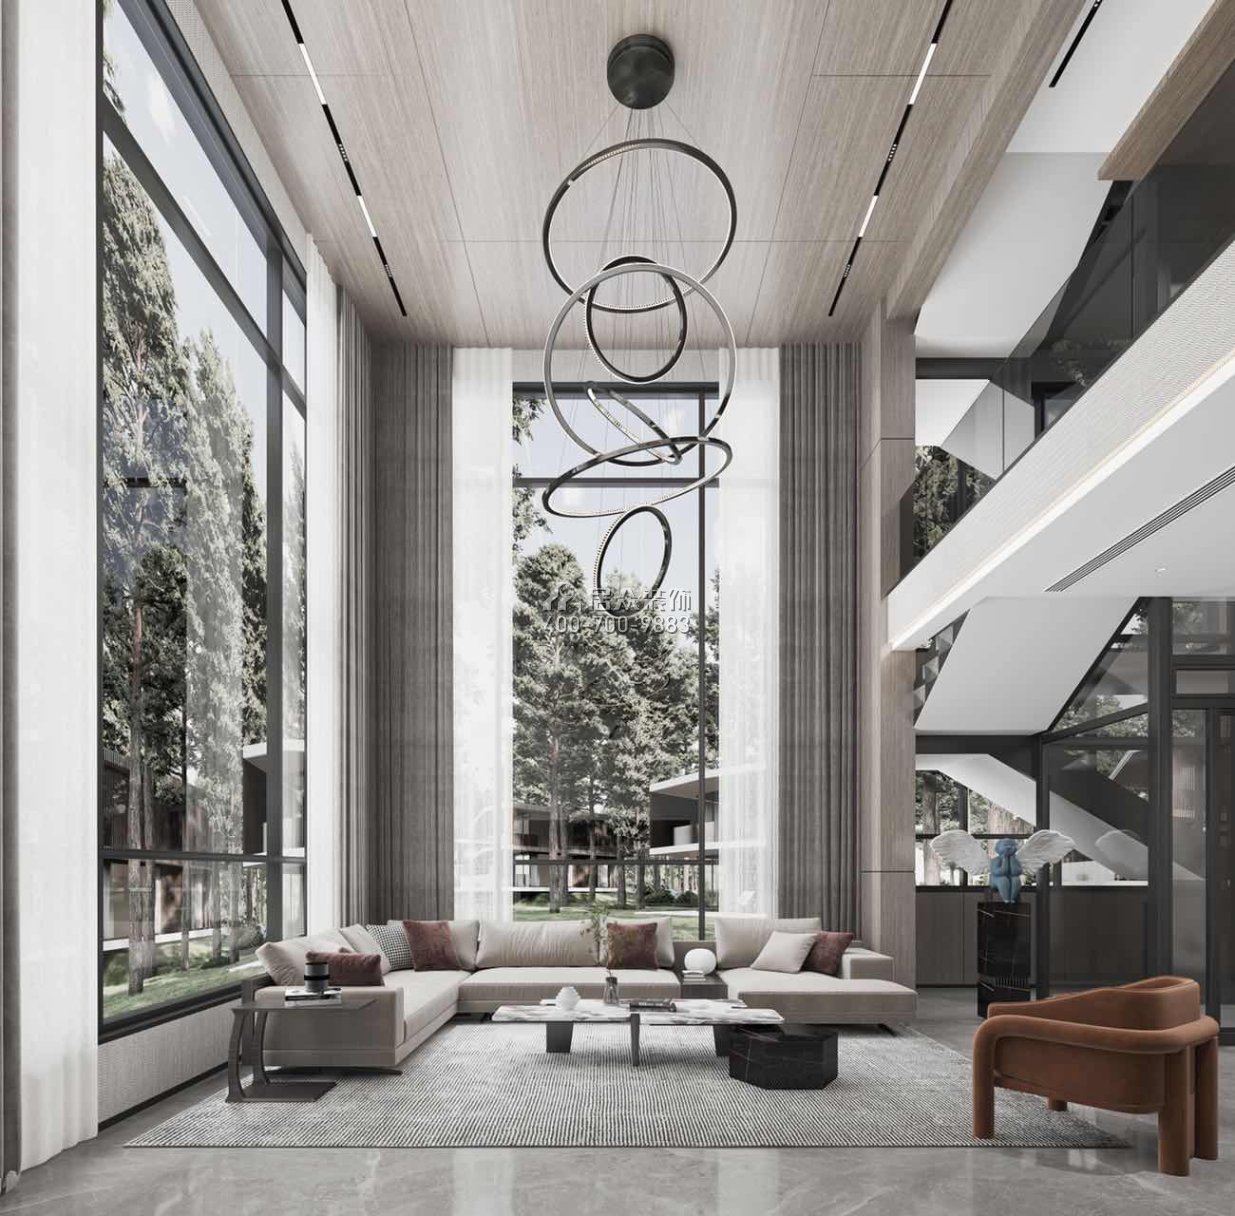 海逸豪庭一期850平方米现代简约风格别墅户型装修效果图